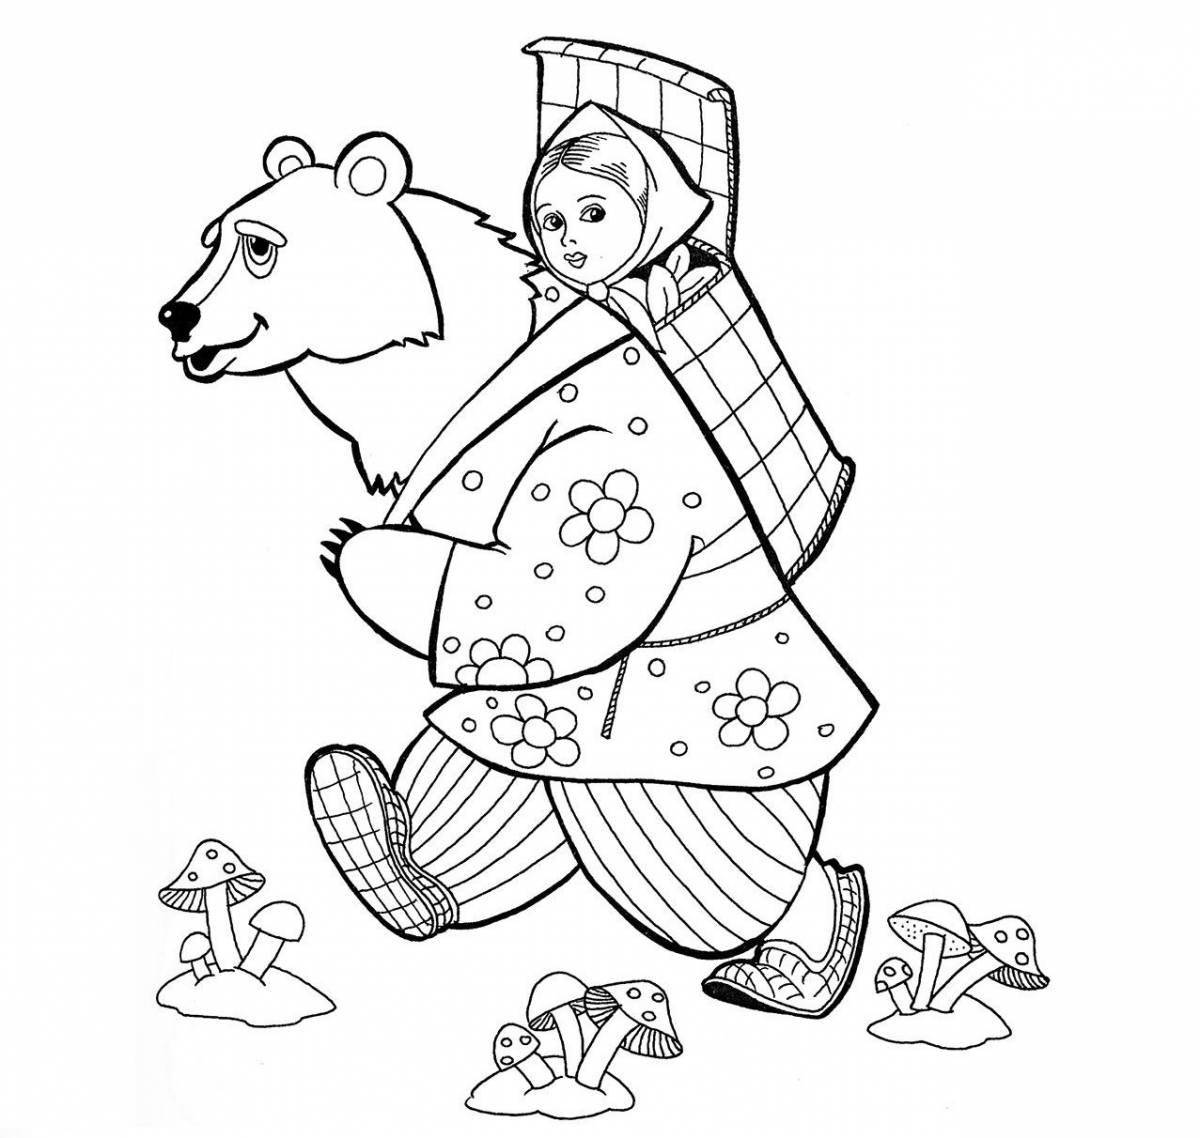 Masha and the bear fairy tale #2